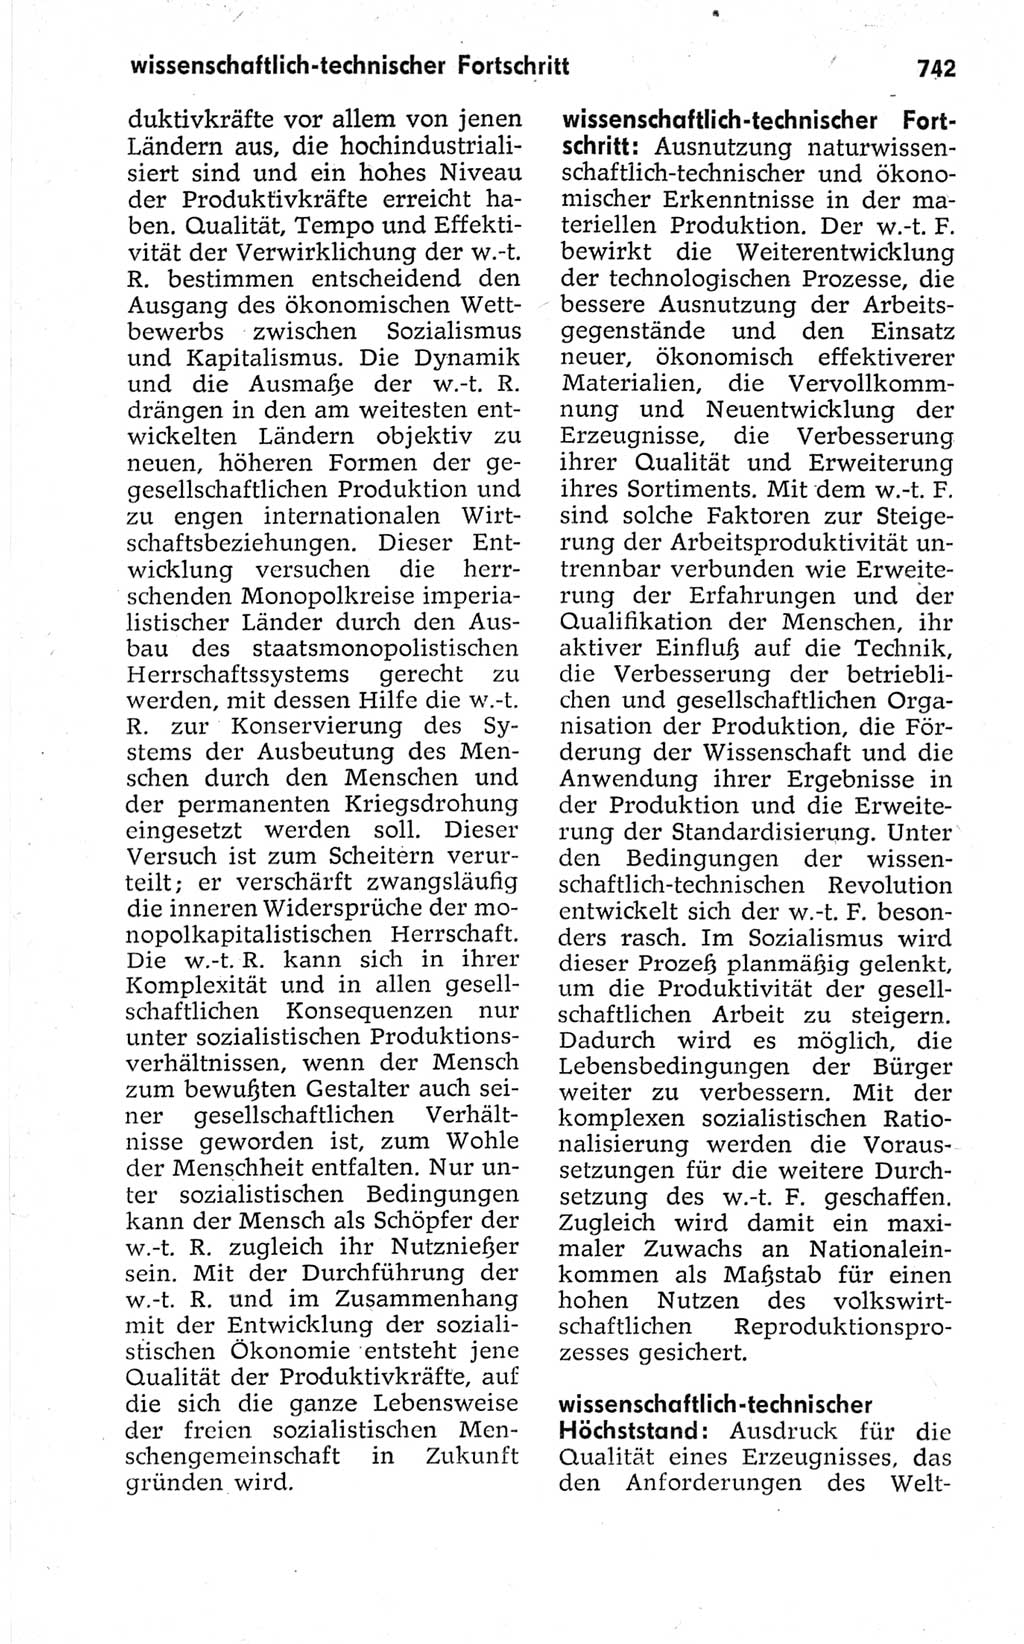 Kleines politisches Wörterbuch [Deutsche Demokratische Republik (DDR)] 1967, Seite 742 (Kl. pol. Wb. DDR 1967, S. 742)